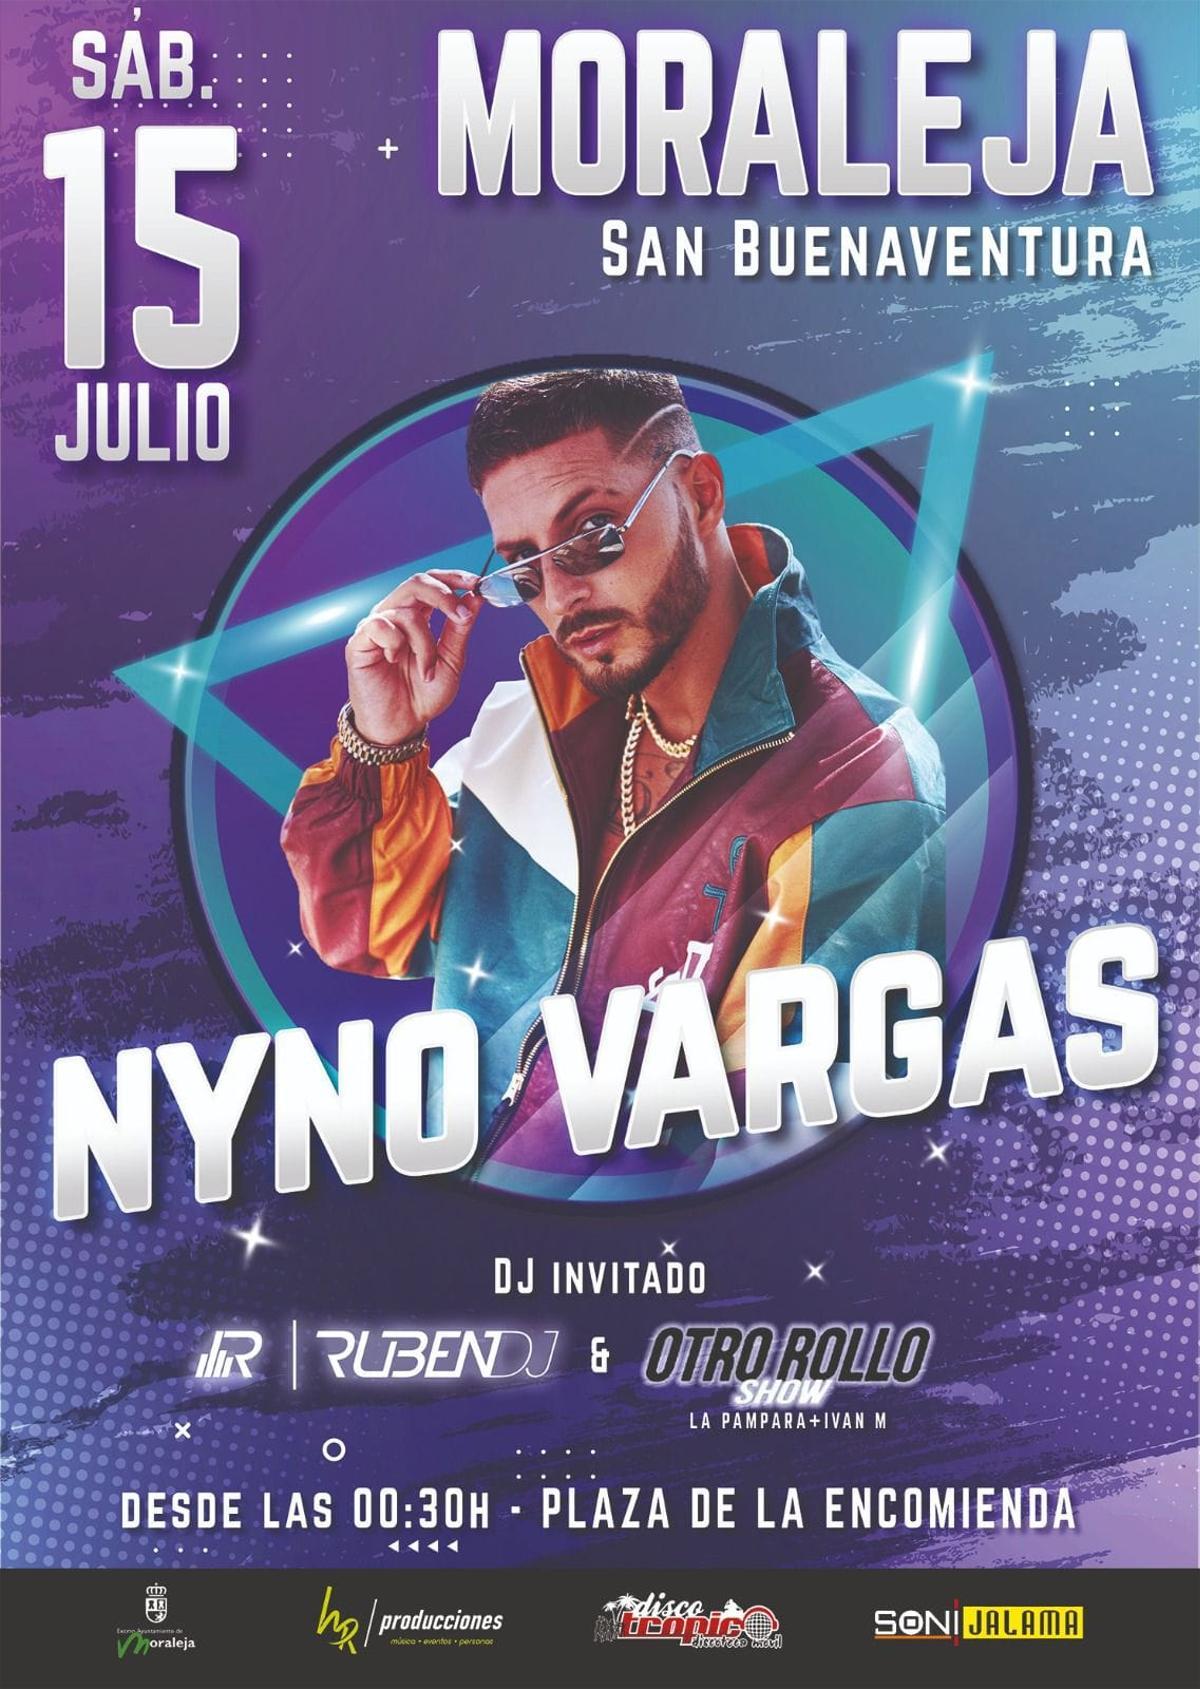 La gran estrella Nyno Vargas cierra el plantel de artistas de San Buenaventura.